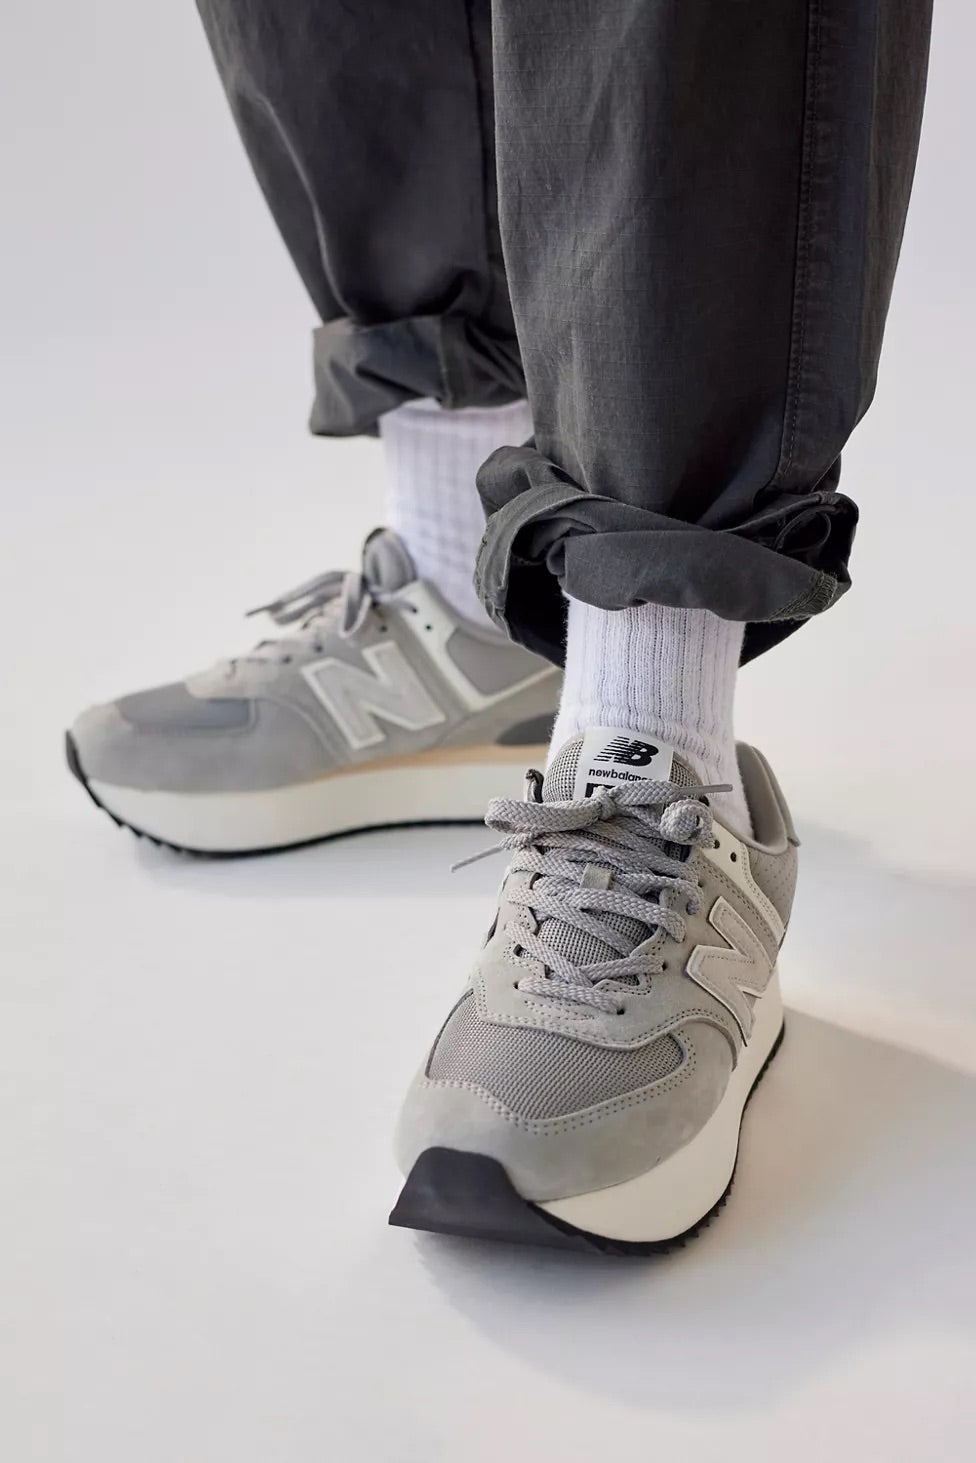 
                  
                    New Balance Women 574+ Platform Sneaker
                  
                